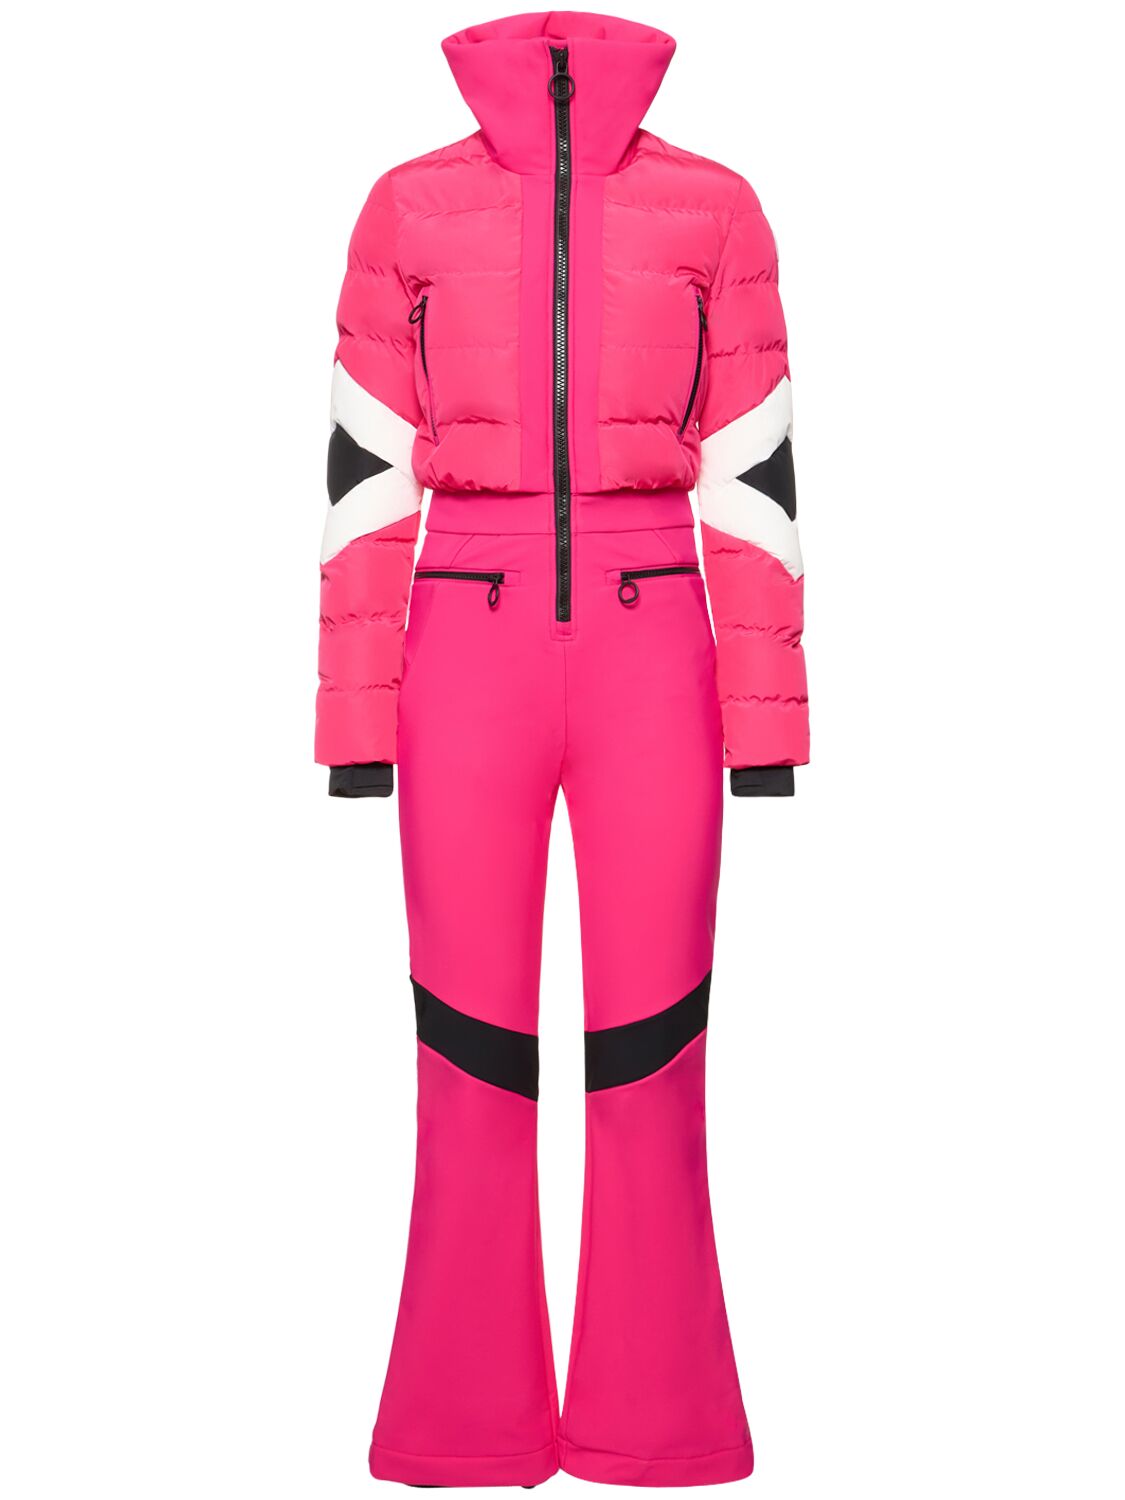 Clarisse Tech Ski Suit – WOMEN > CLOTHING > JUMPSUITS & ROMPERS